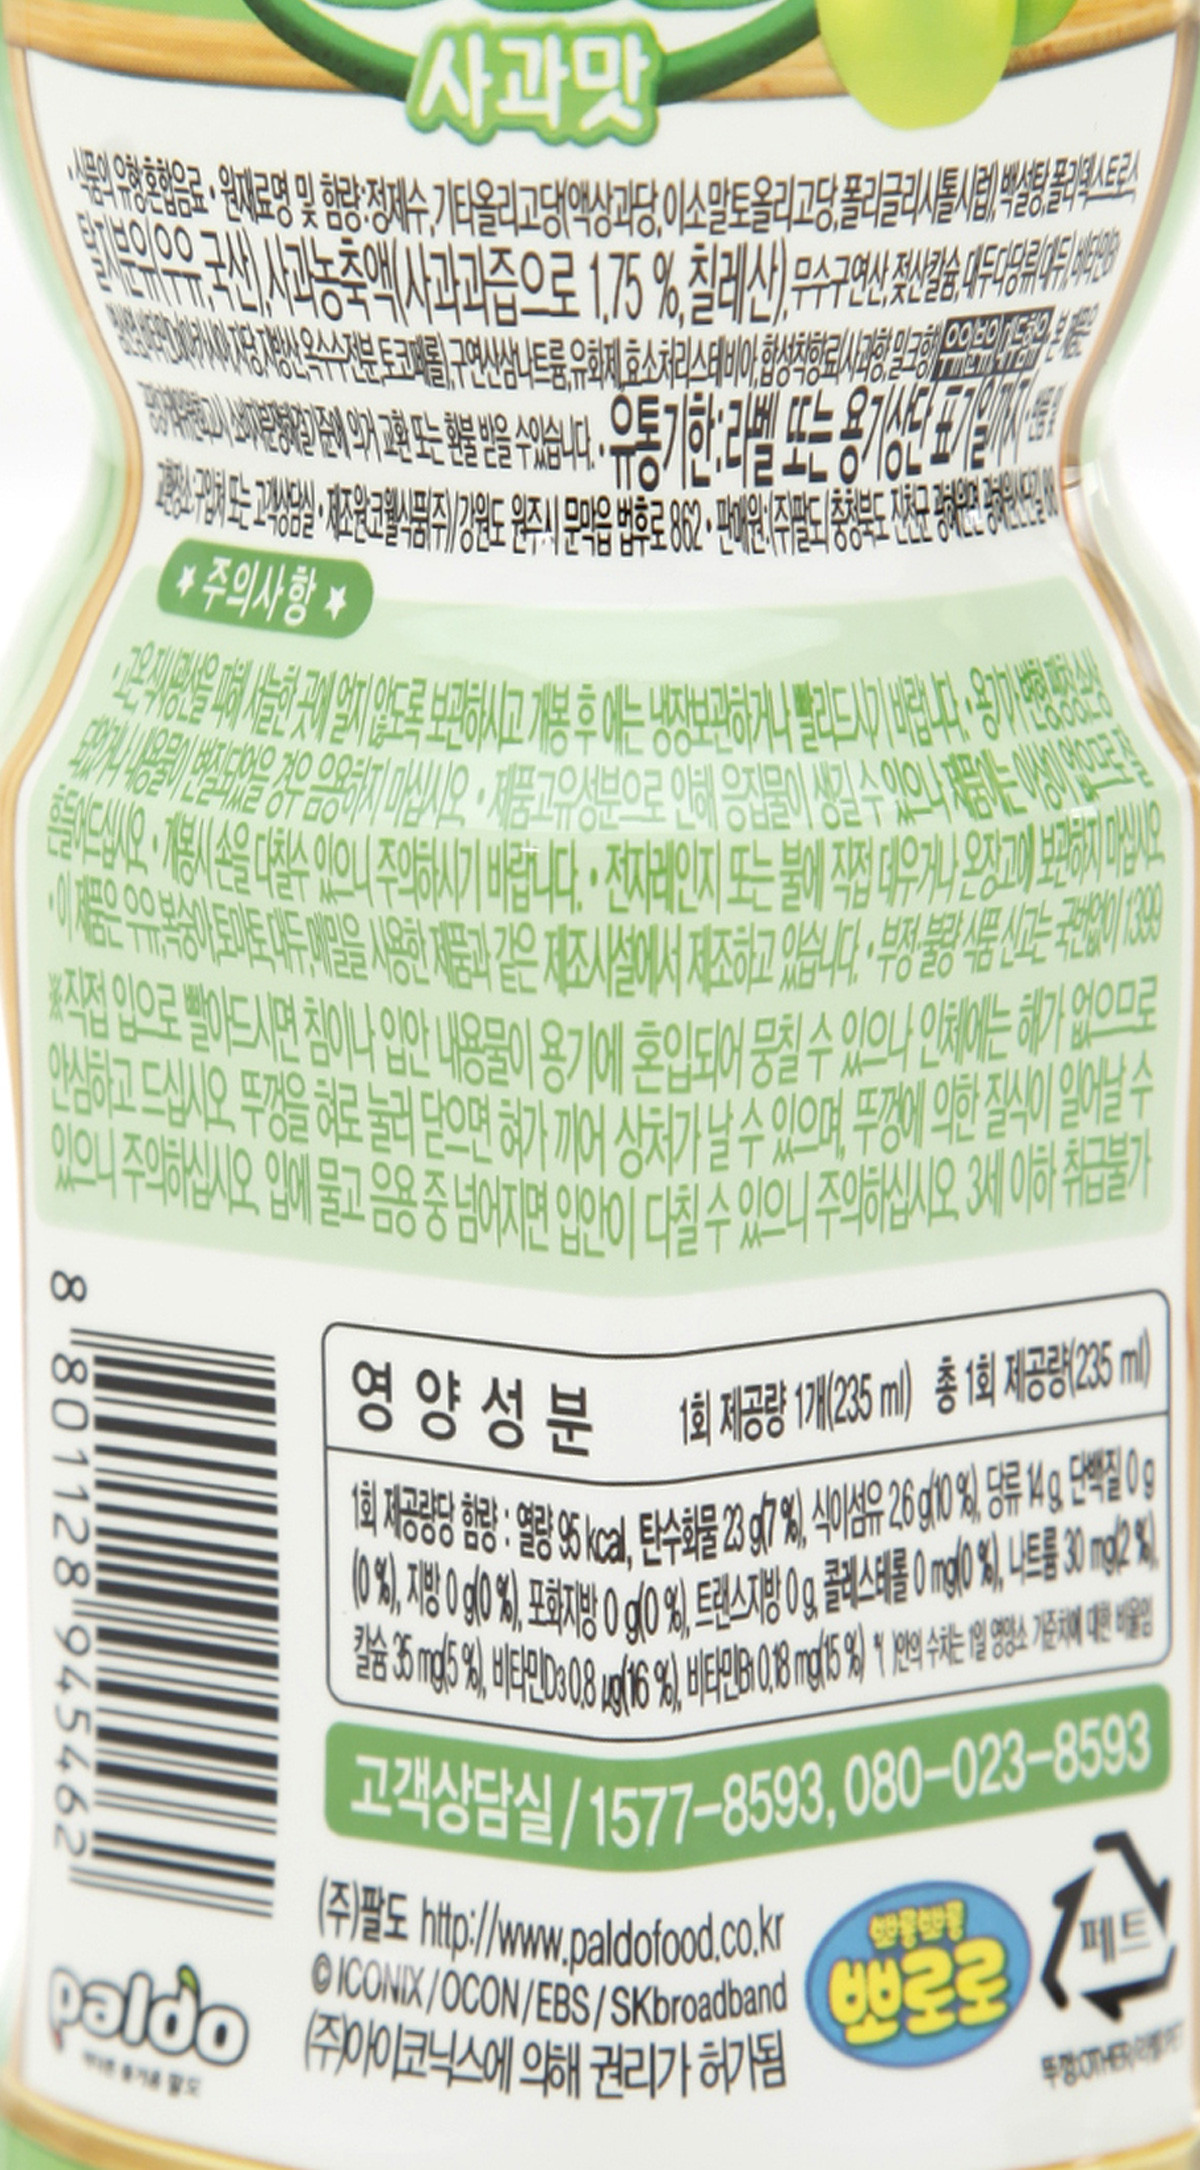 韓國食品-[팔도] 뽀로로[사과맛] 235ml